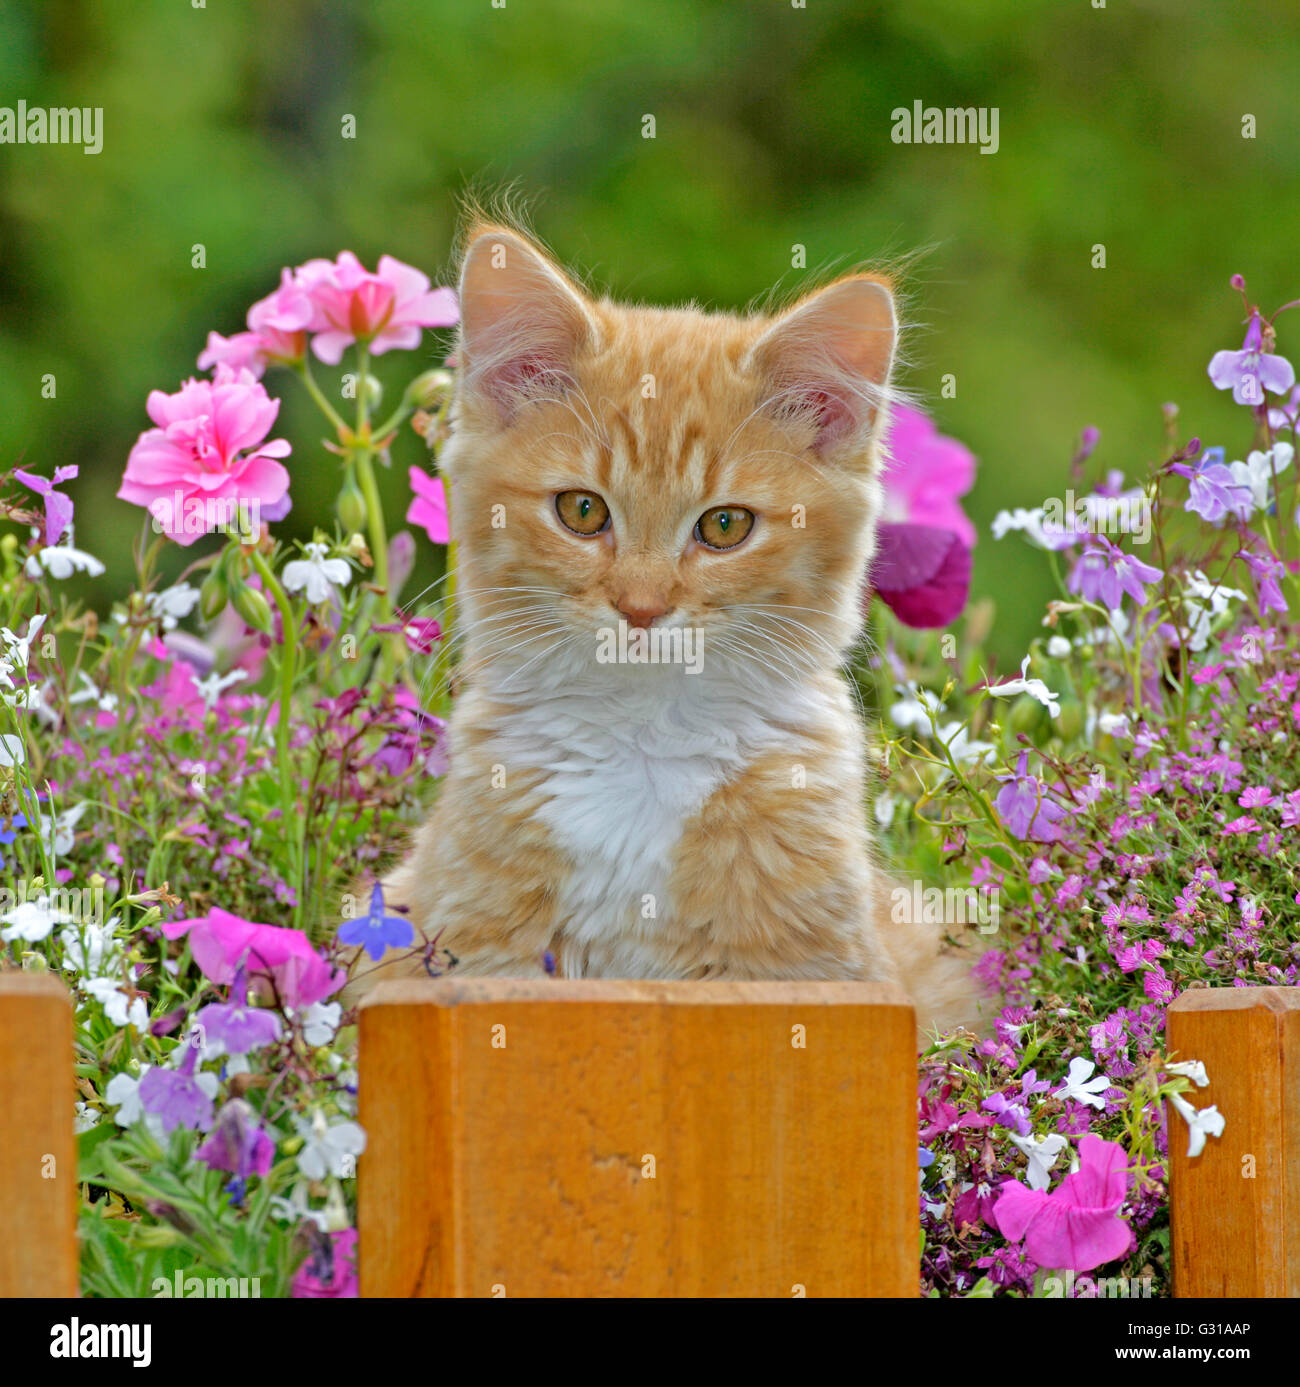 Kitten ginger tabby sitting in flower basket Stock Photo